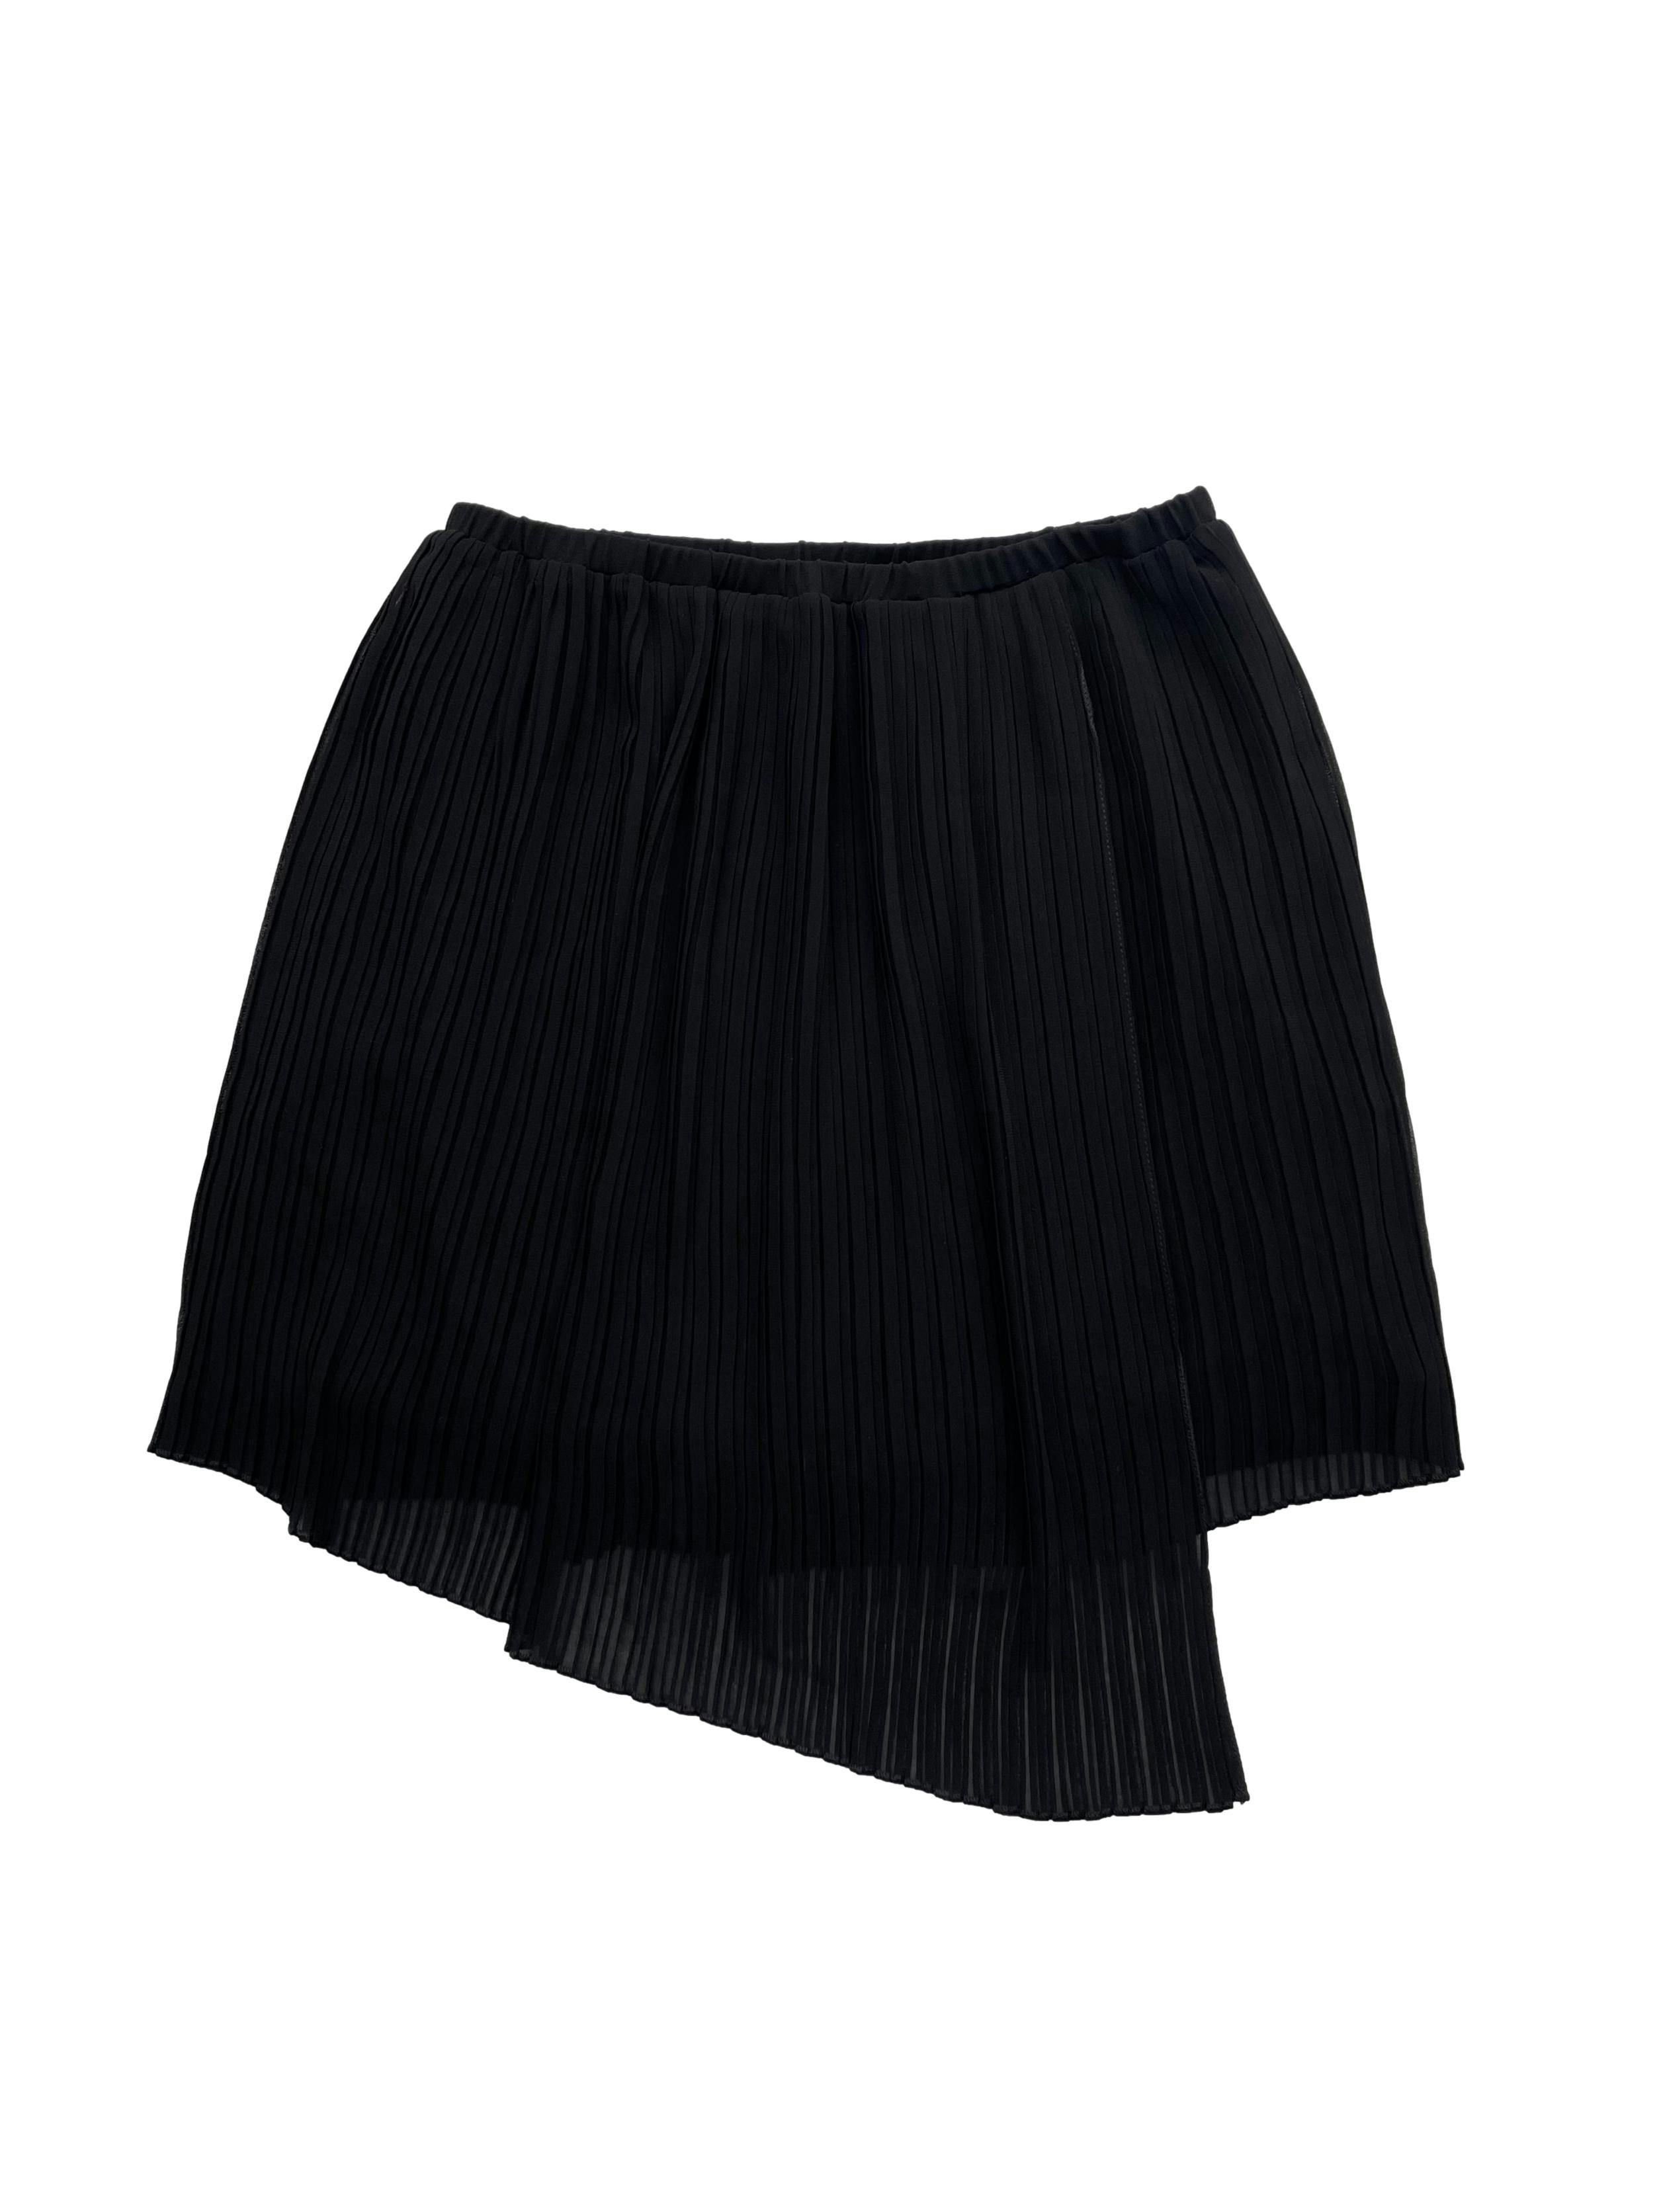 Mini falda Mango de gasa plisada negra con forro, estilo envolvente con basta asimétrica y cintura elástica. Largo 40cm.